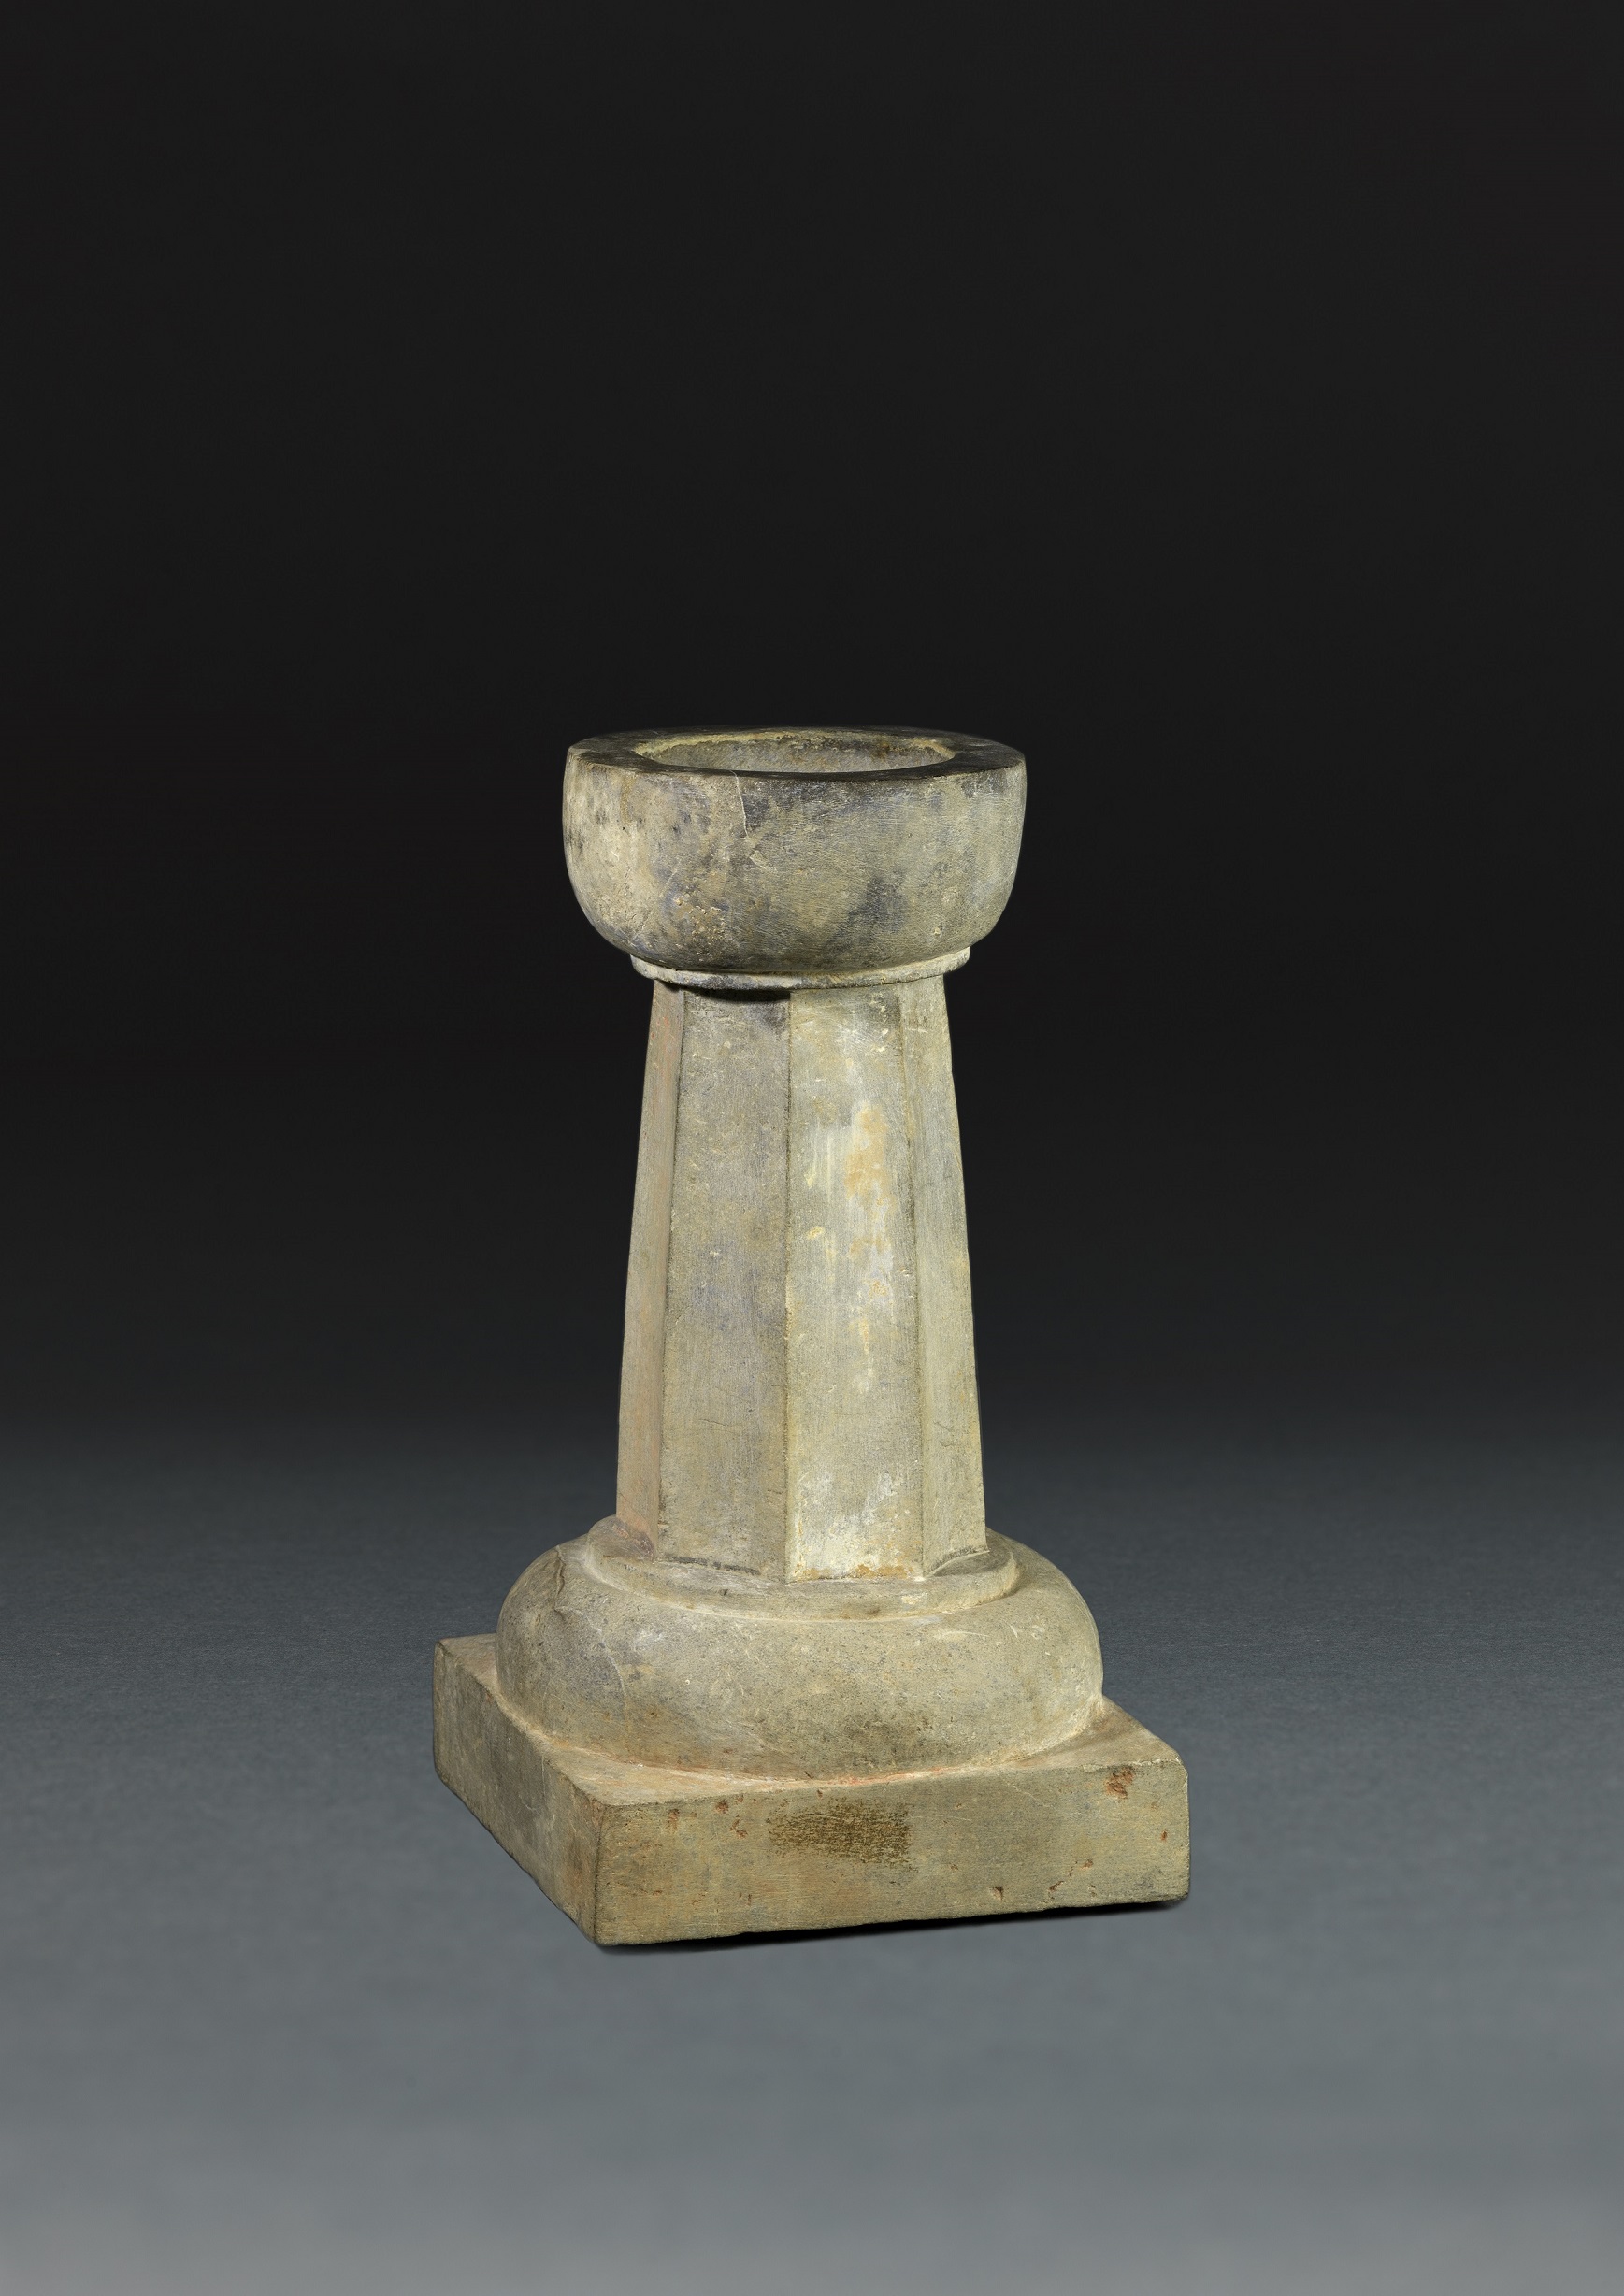 A rare limestone oil lamp